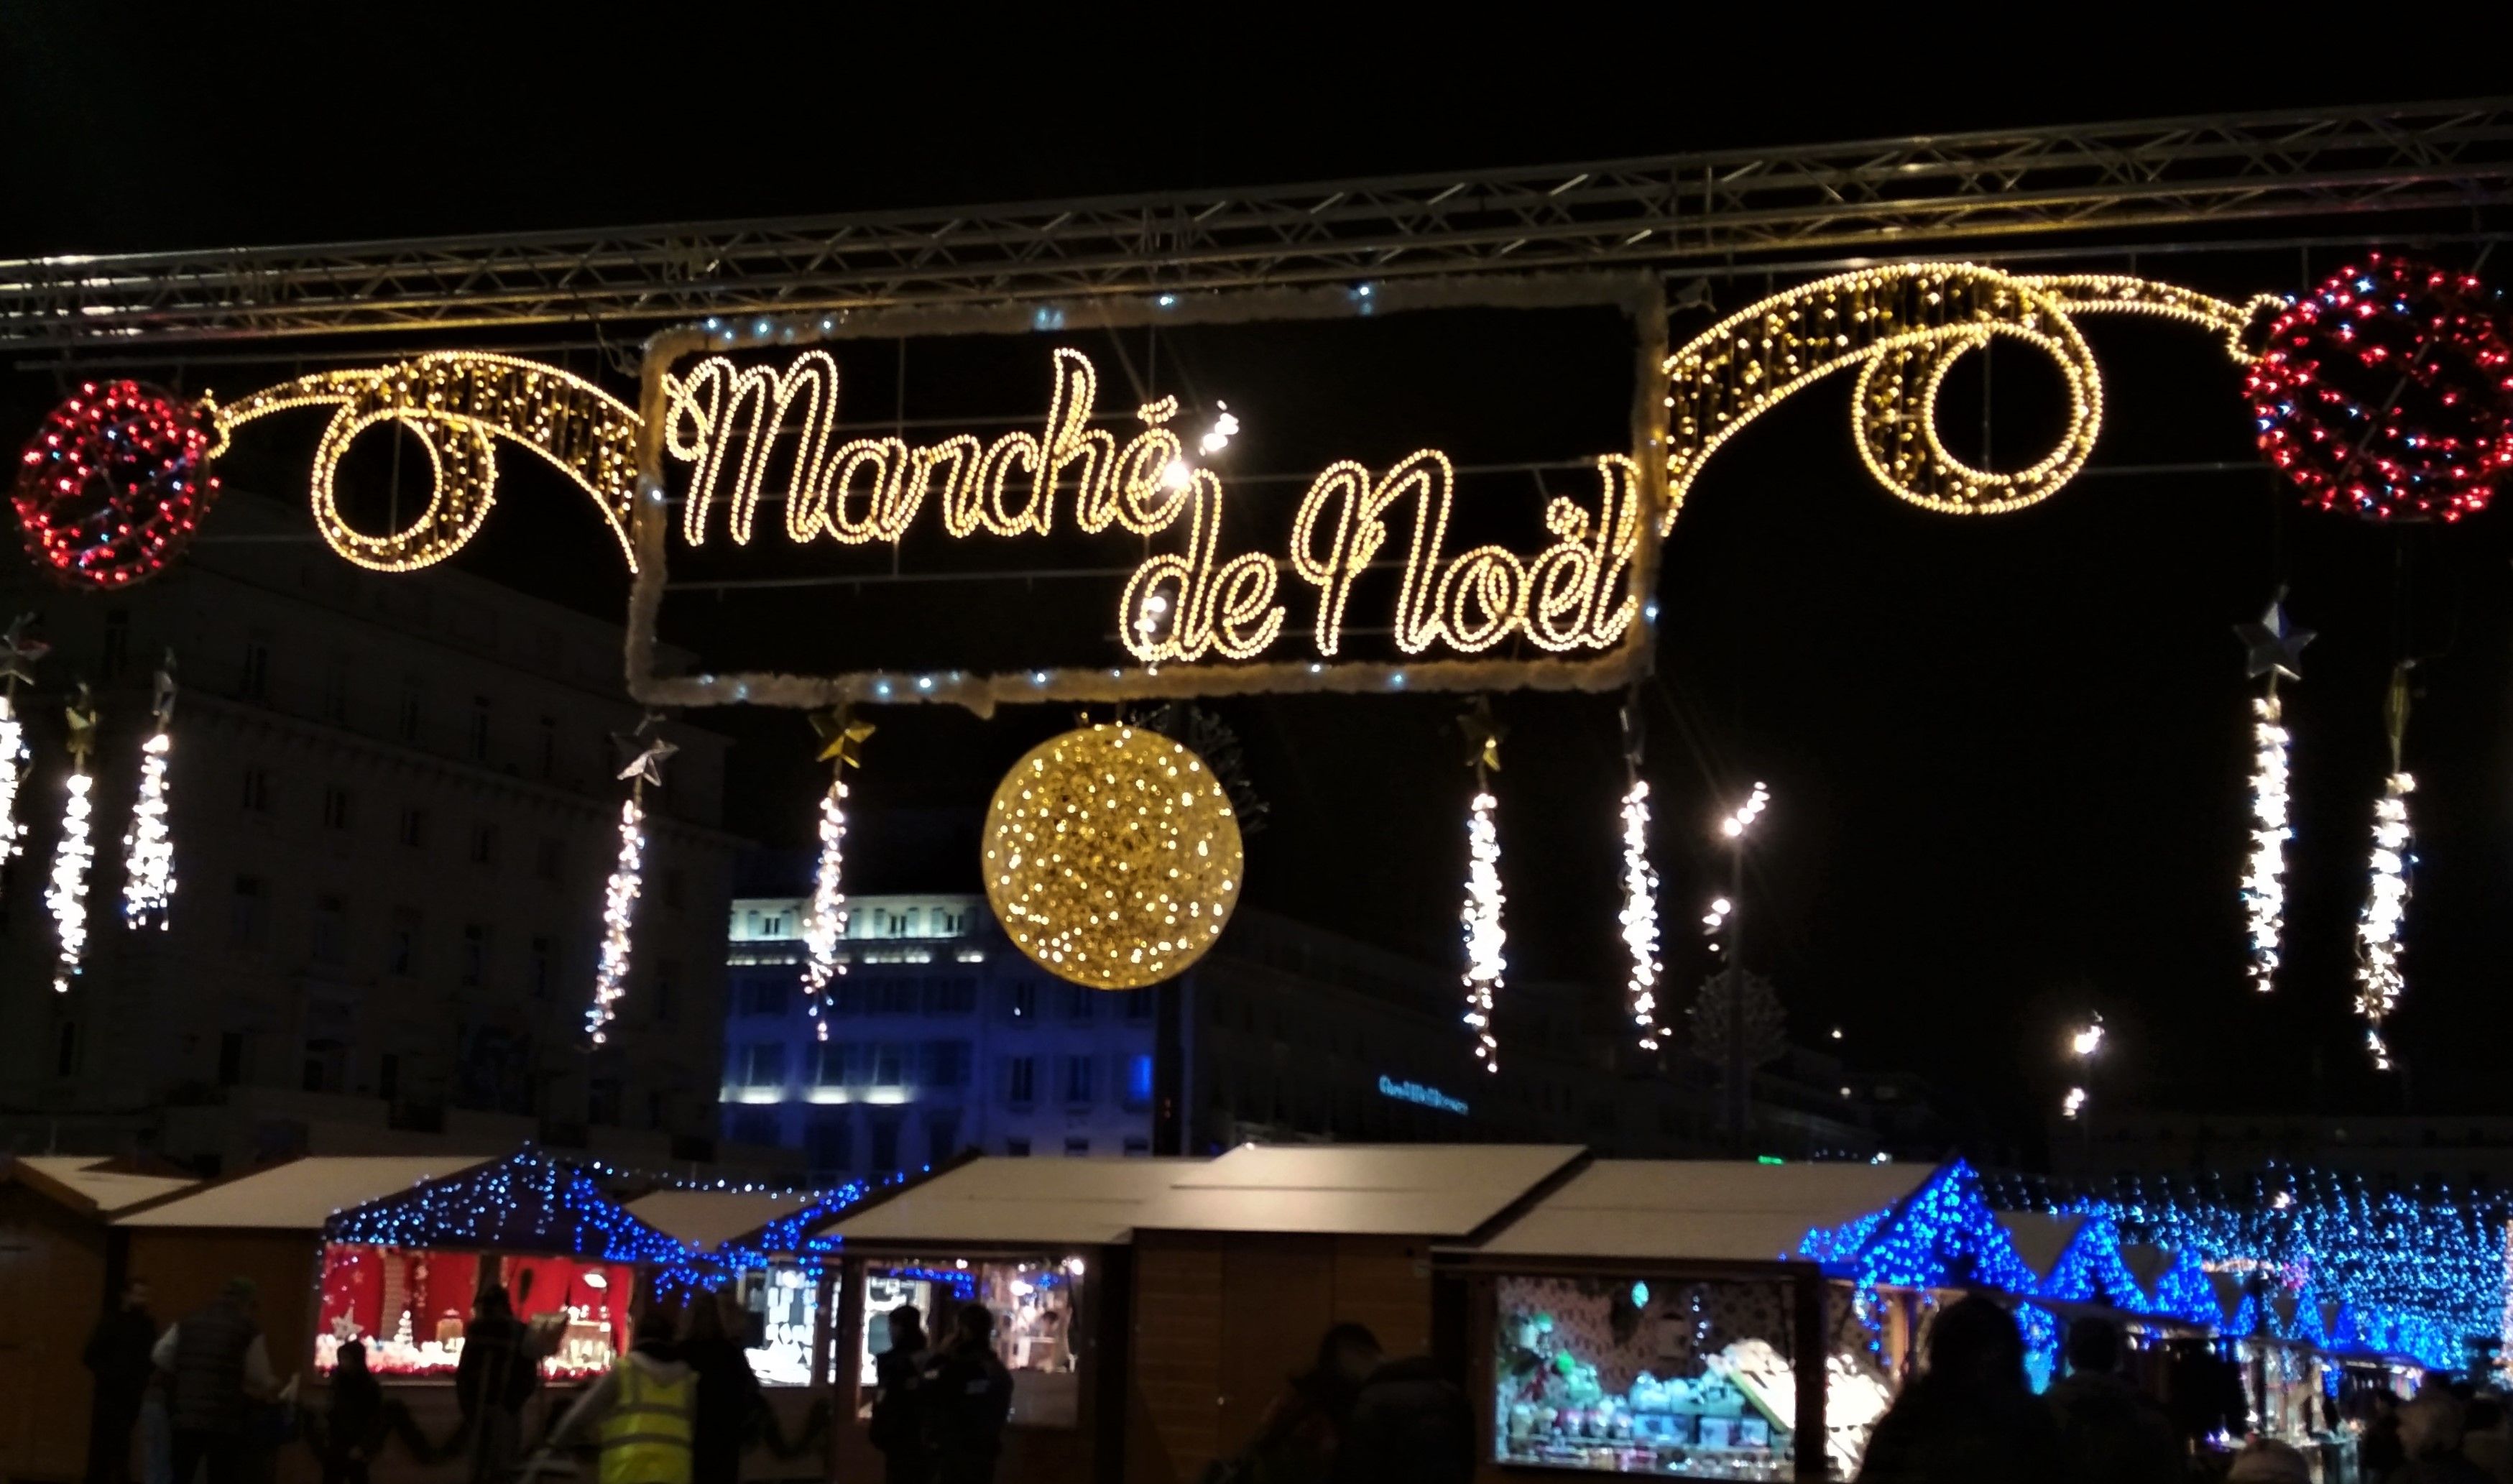 Marché de Noël du Vieux Port, Christmas market, Marseille: 18 November 2017- 7 January 2018